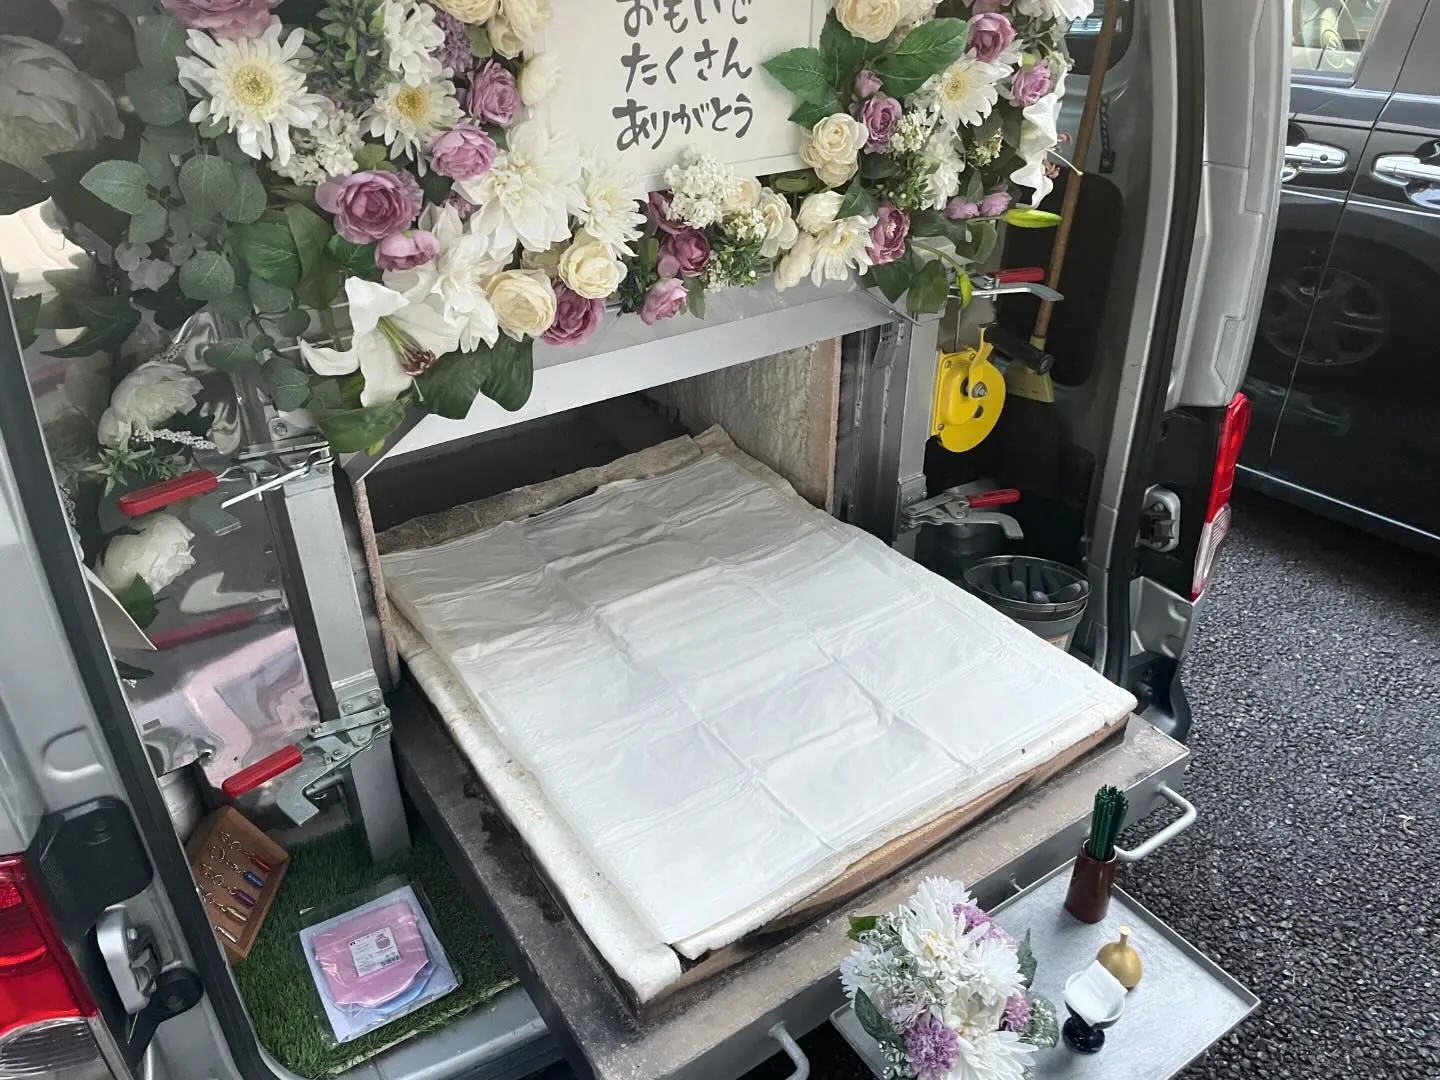 東京都武蔵村山市にてハムスターちゃんのご火葬に伺いました。